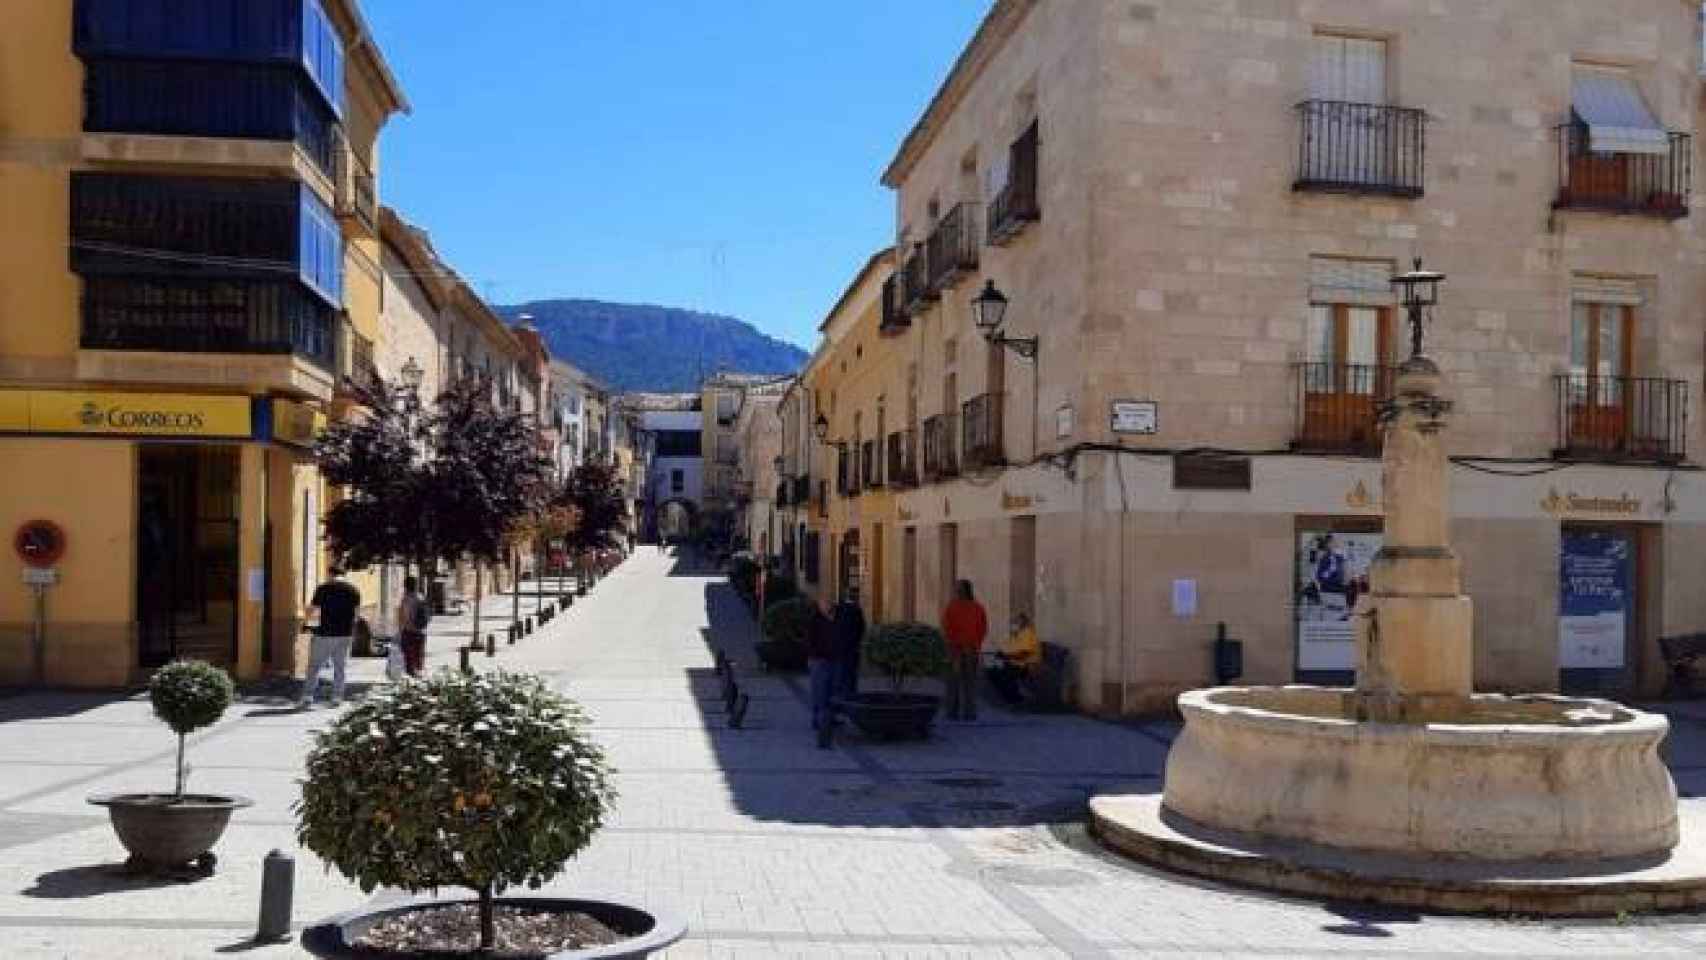 Priego (Cuenca)